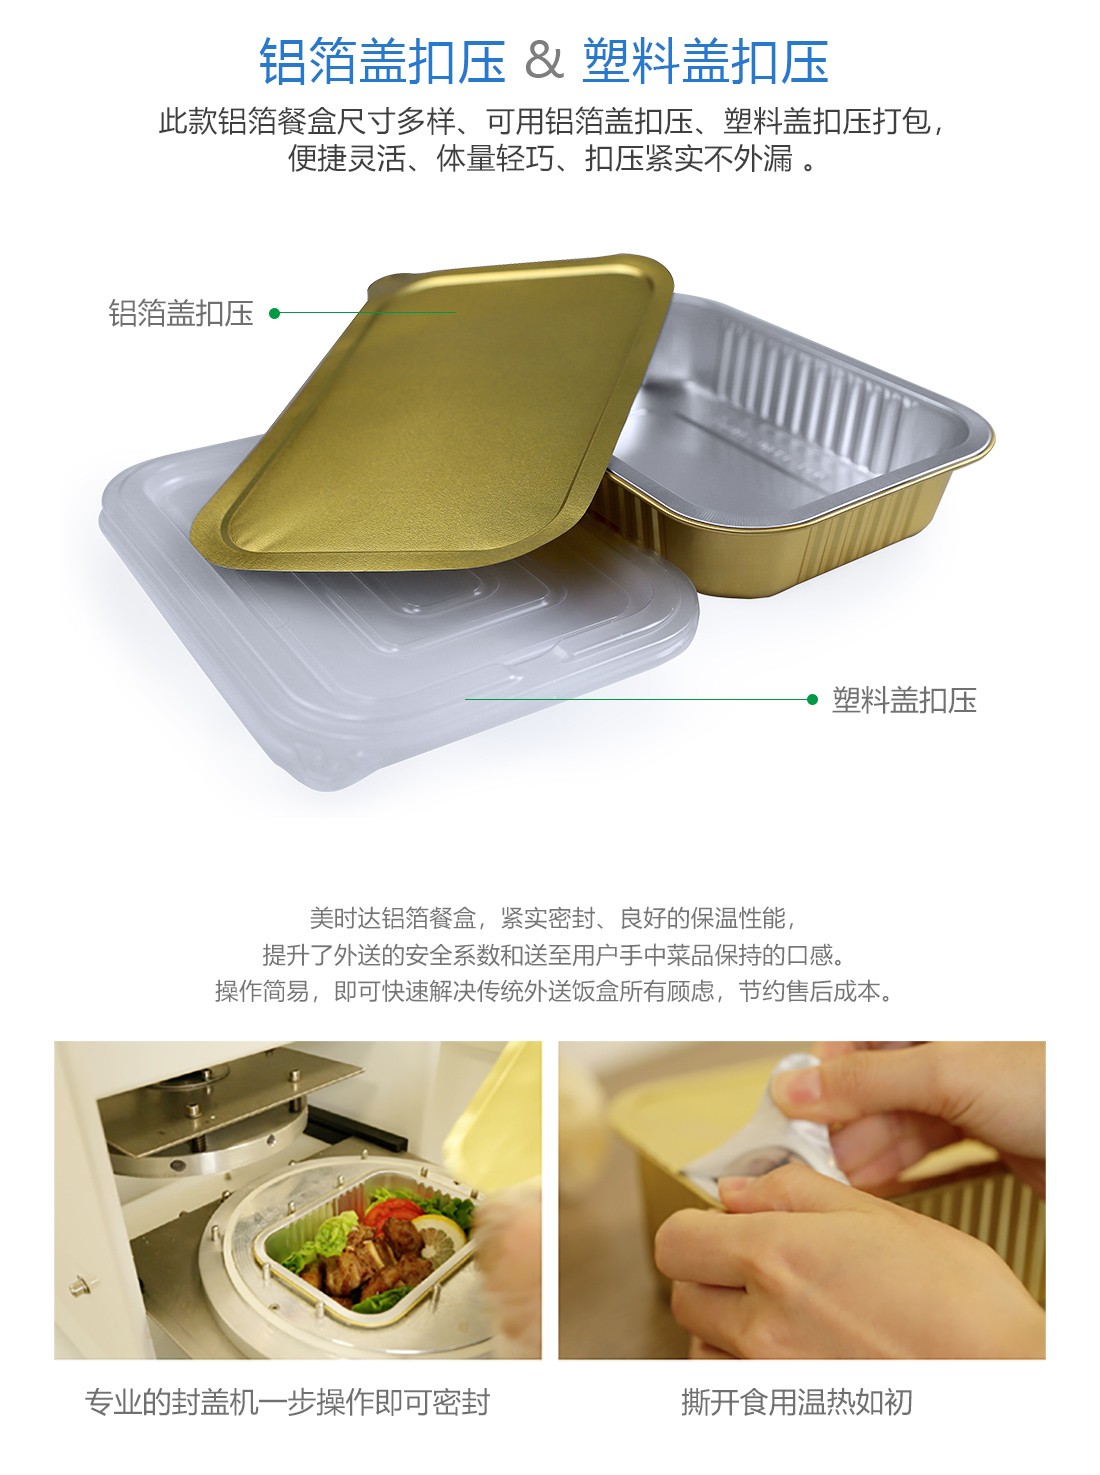 即食菜铝箔包装盒 预制菜包装厂